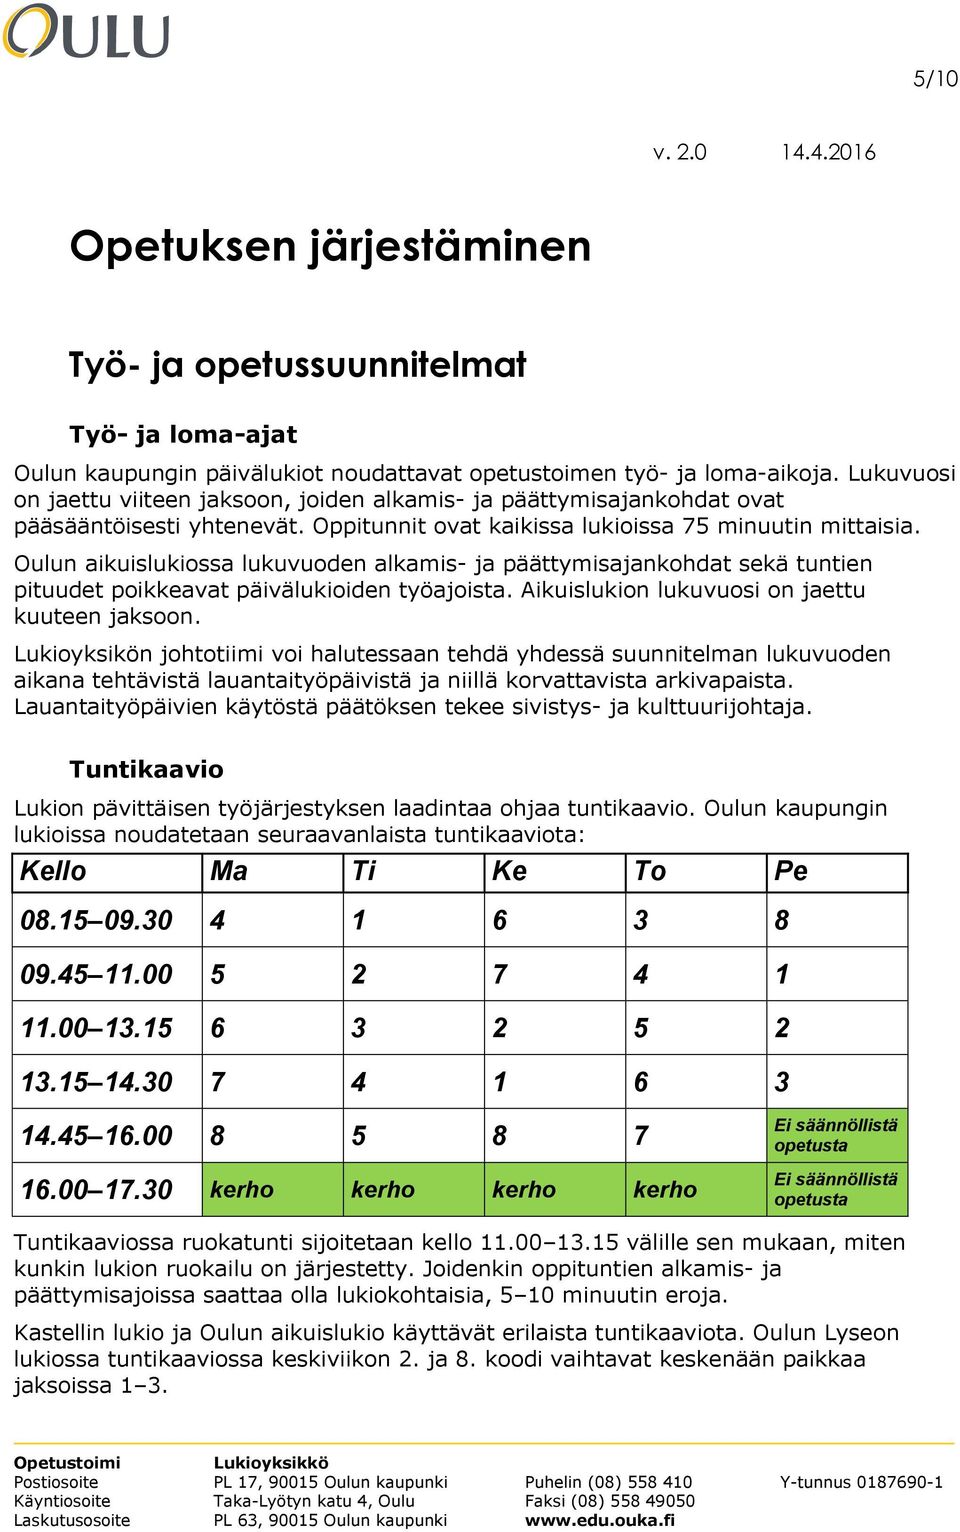 Oulun aikuislukiossa lukuvuoden alkamis- ja päättymisajankohdat sekä tuntien pituudet poikkeavat päivälukioiden työajoista. Aikuislukion lukuvuosi on jaettu kuuteen jaksoon.